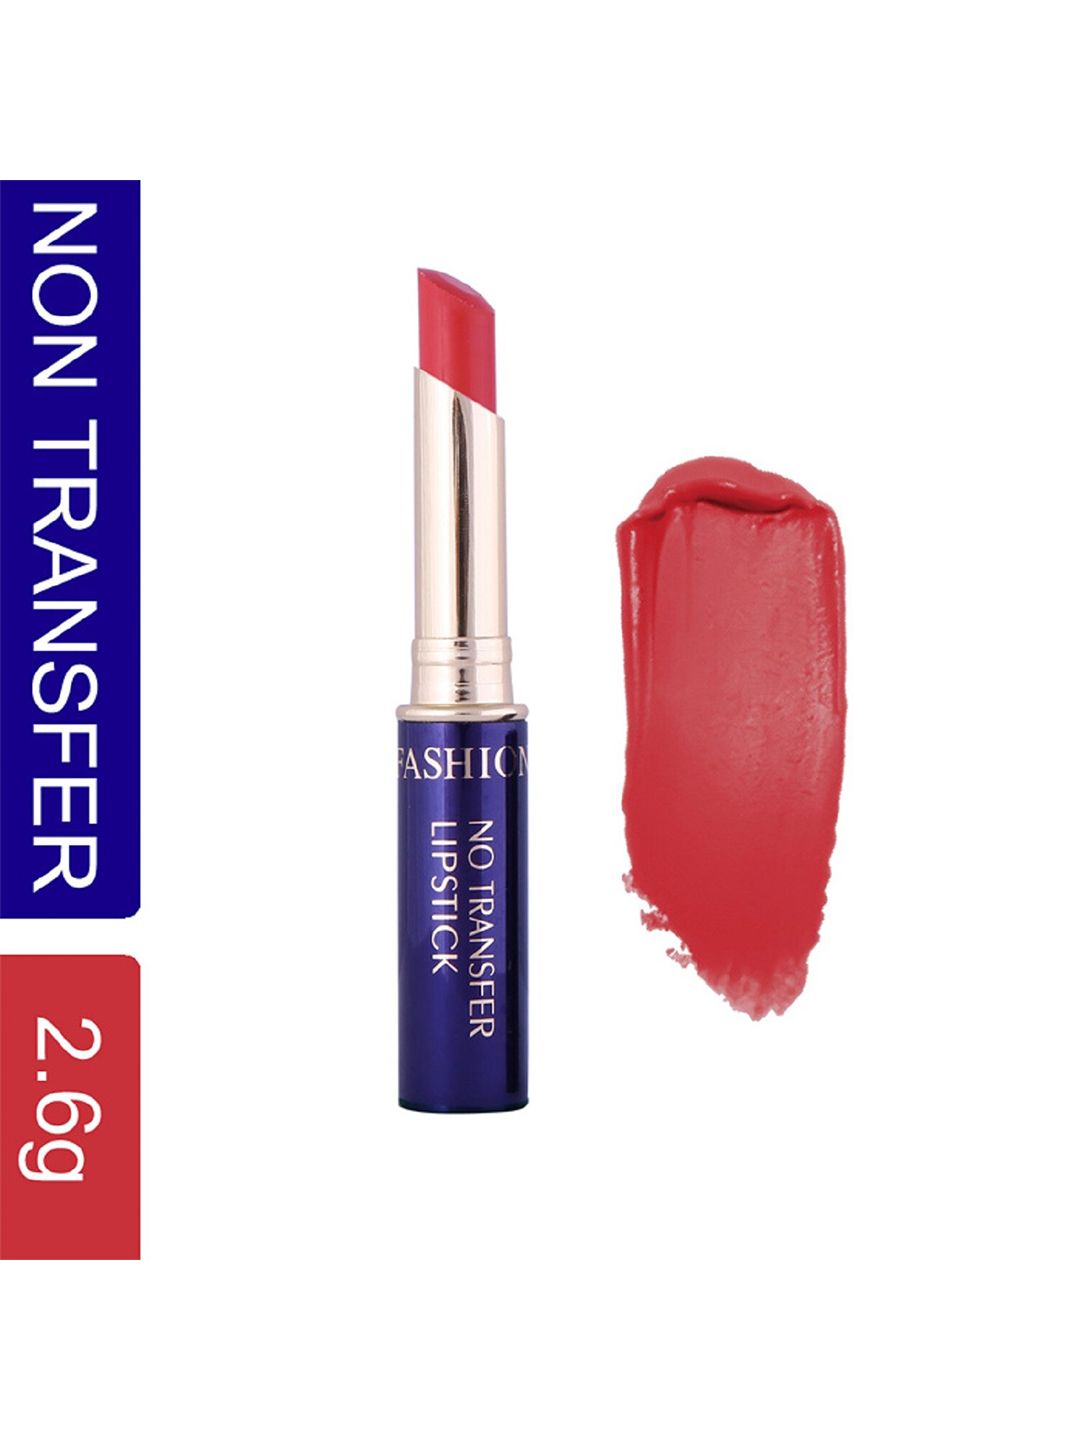 Fashion Colour Non-Transfer Waterproof Matte Lipstick - Garnet 24 Price in India